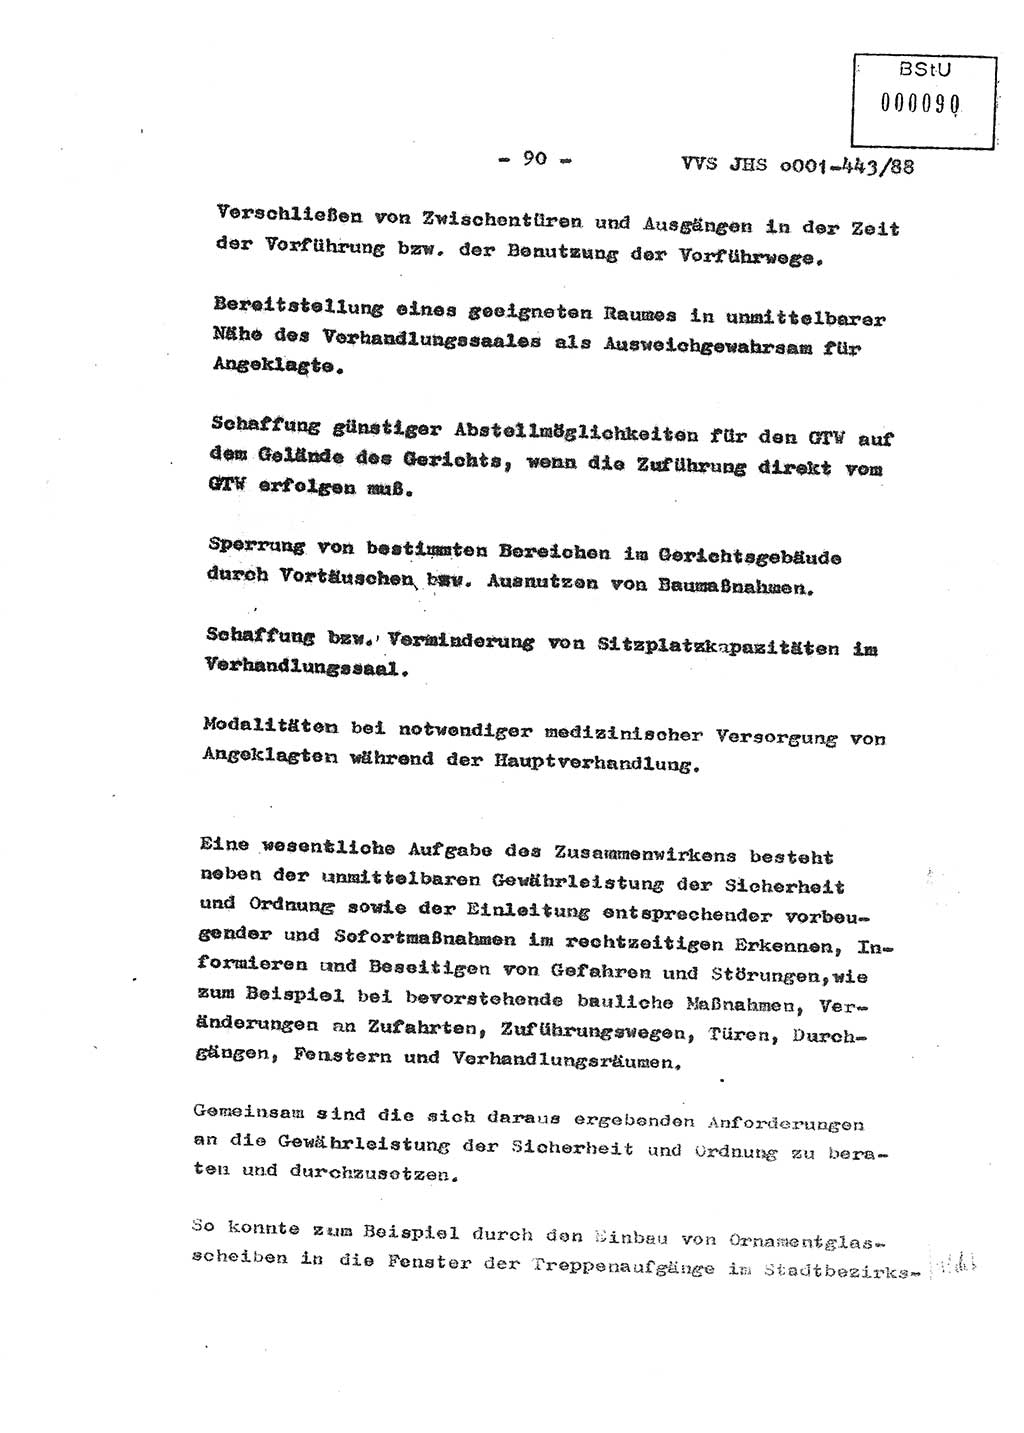 Diplomarbeit Hauptmann Michael Rast (Abt. ⅩⅣ), Major Bernd Rahaus (Abt. ⅩⅣ), Ministerium für Staatssicherheit (MfS) [Deutsche Demokratische Republik (DDR)], Juristische Hochschule (JHS), Vertrauliche Verschlußsache (VVS) o001-443/88, Potsdam 1988, Seite 90 (Dipl.-Arb. MfS DDR JHS VVS o001-443/88 1988, S. 90)